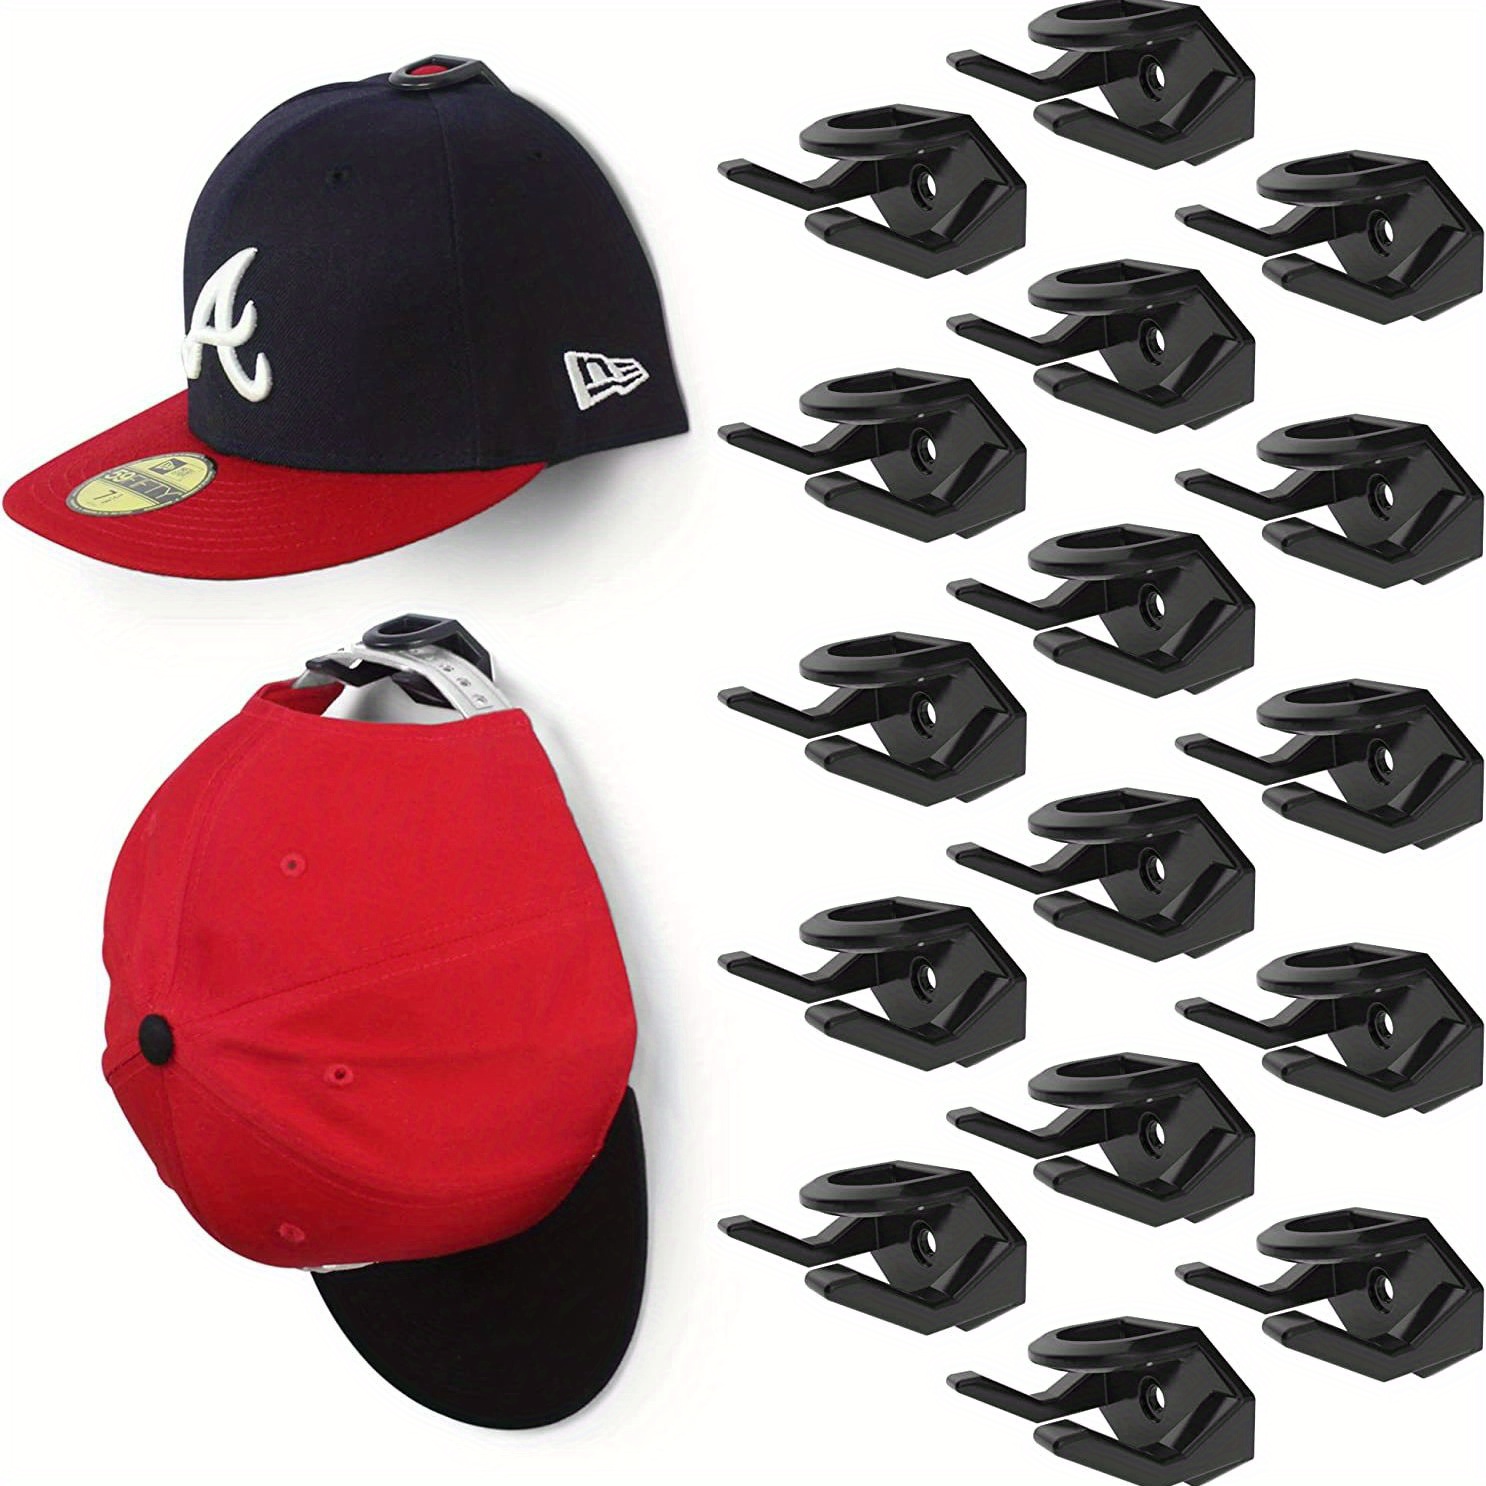 Appendi Cappelli Da Baseball, Gancio Adesivo Per Organizzatore Cappelli,  Design Minimalista, Adatto Per Cuffie, Collane